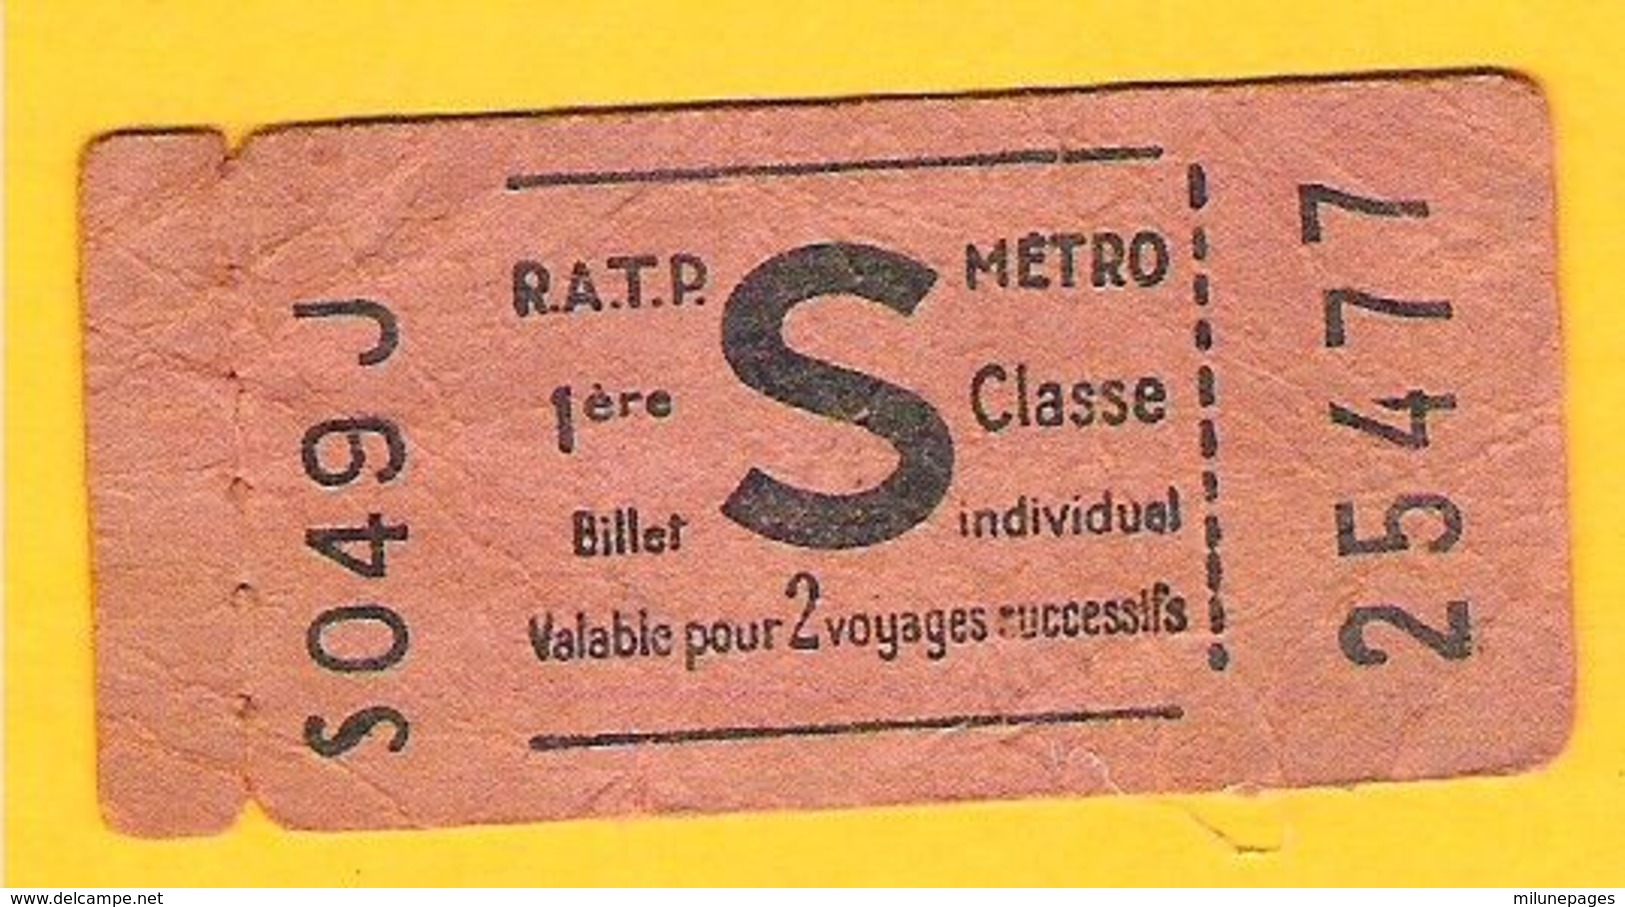 Ticket De Métro RATP 1ère Classe Valable Pour 2 Voyages Successifs Non Poinçonné Lettre S - Europe